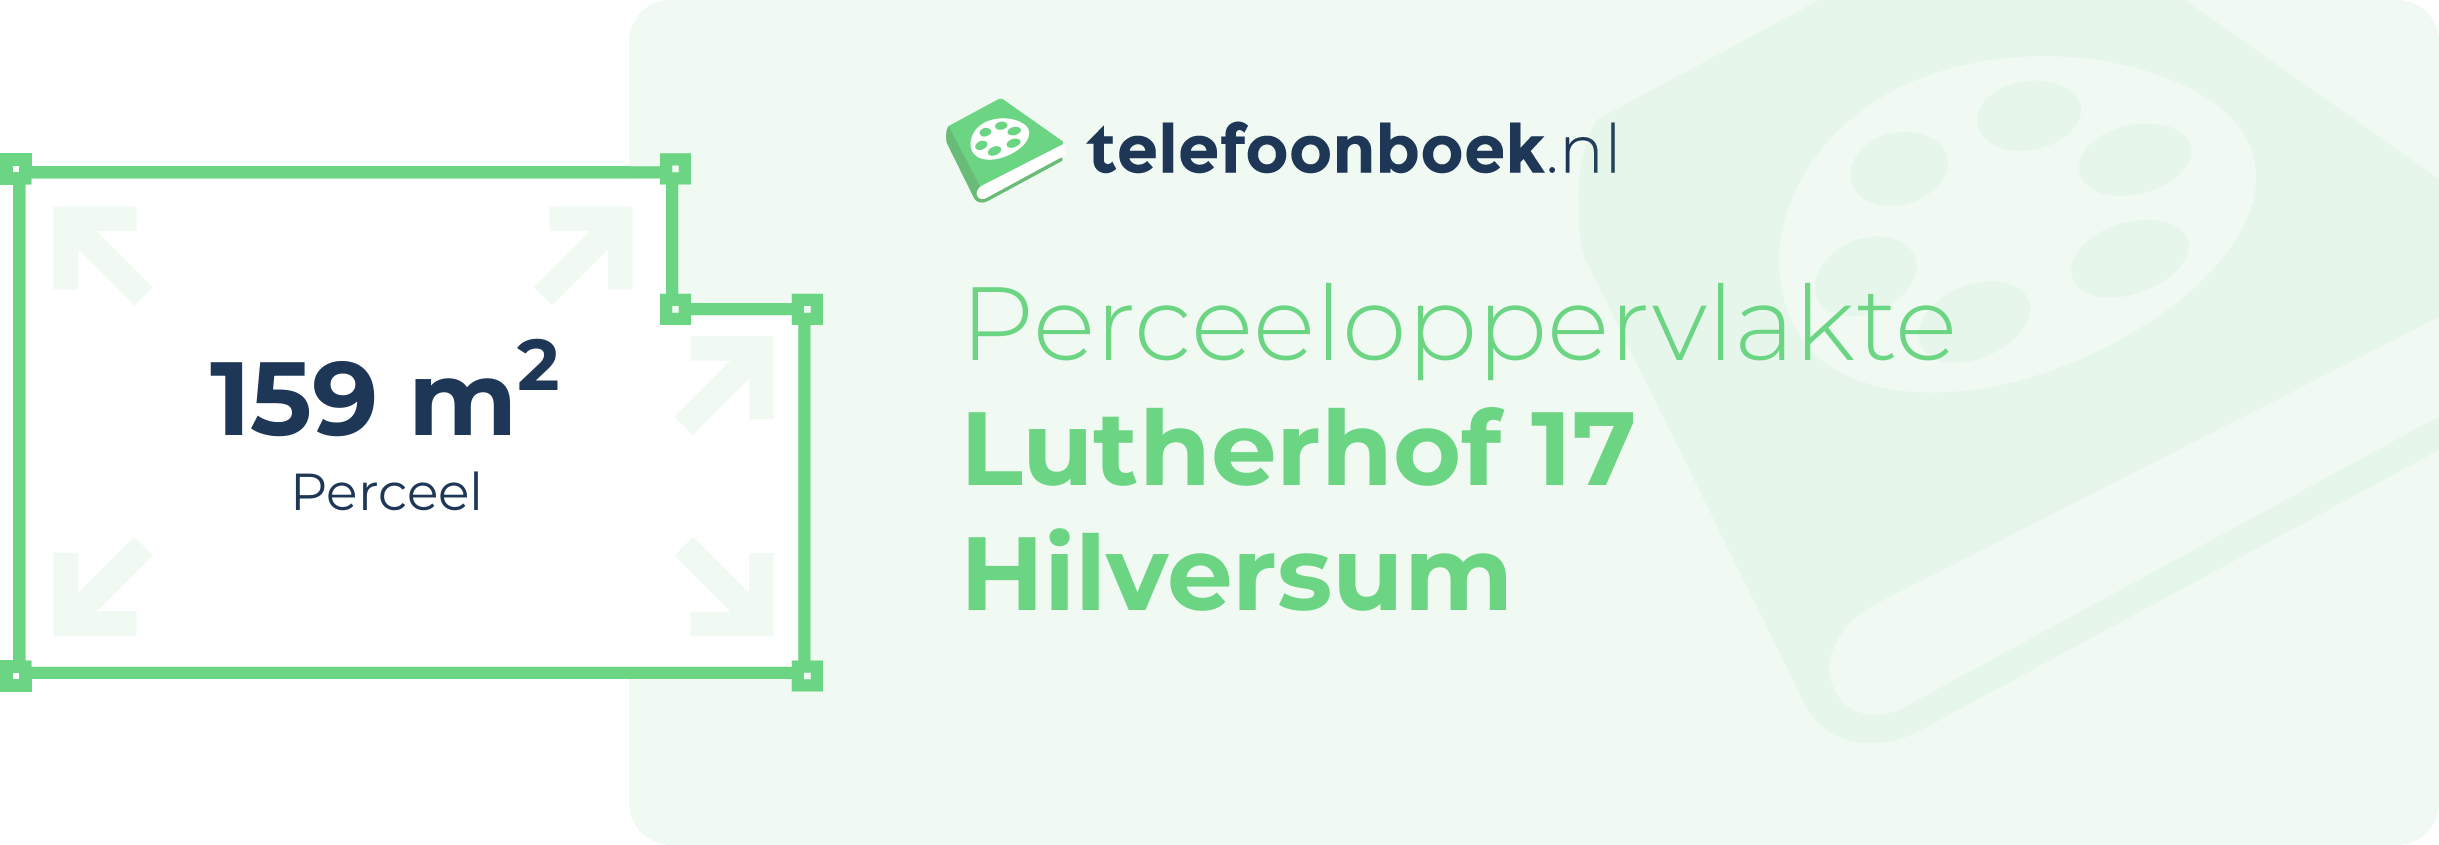 Perceeloppervlakte Lutherhof 17 Hilversum